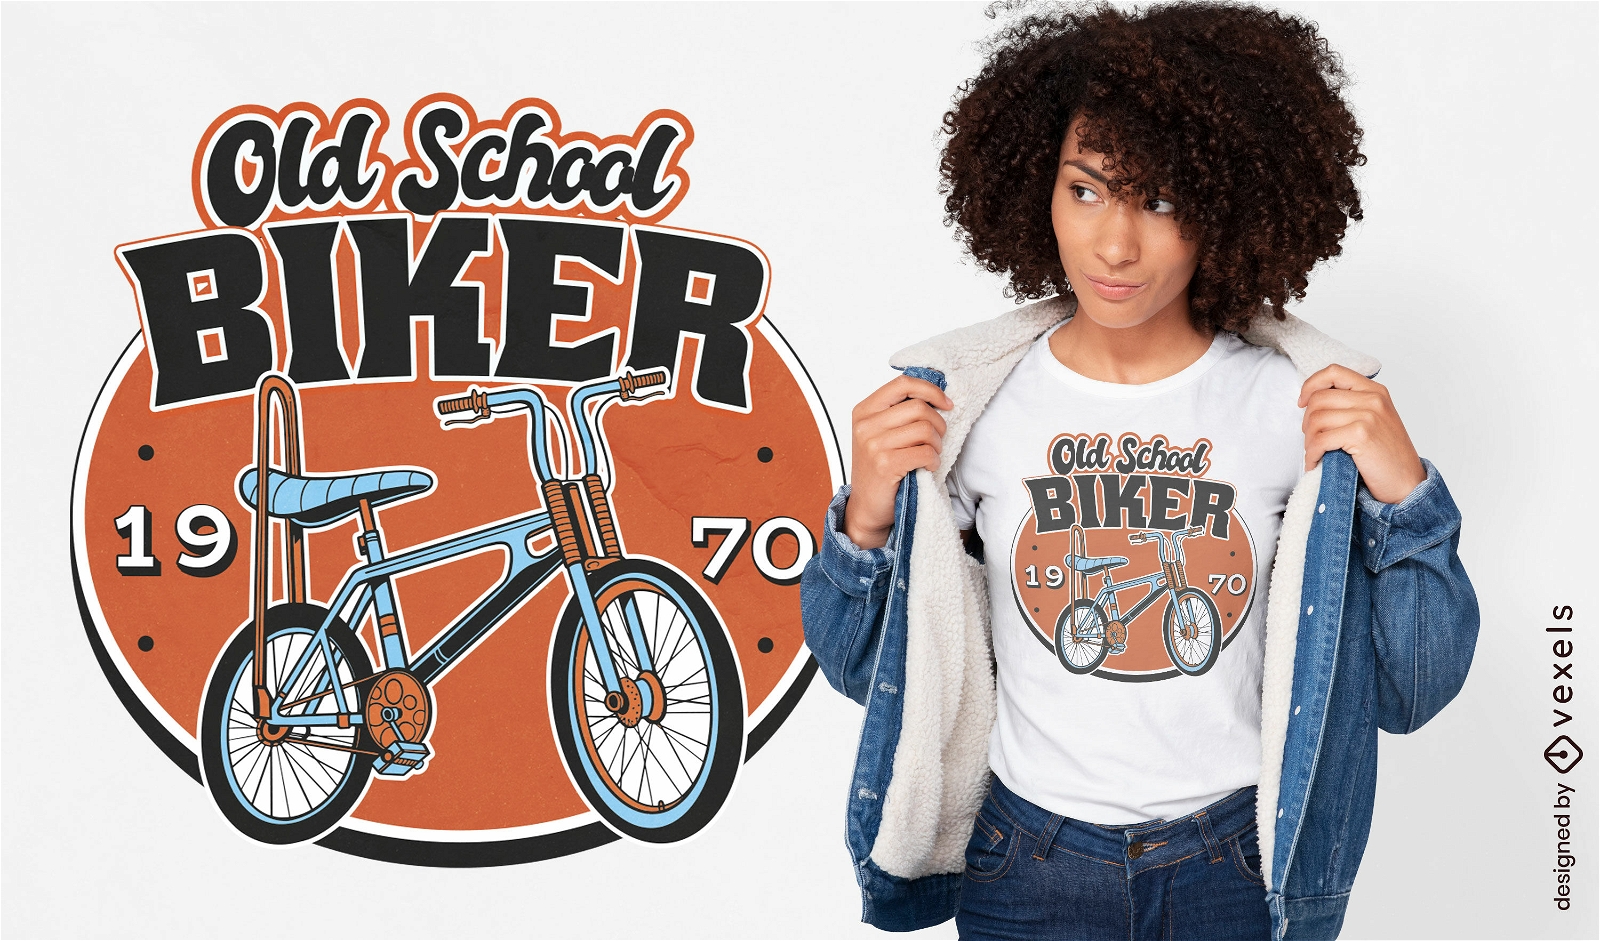 Dise?o de camiseta de bicicleta de la vieja escuela de los a?os 70.